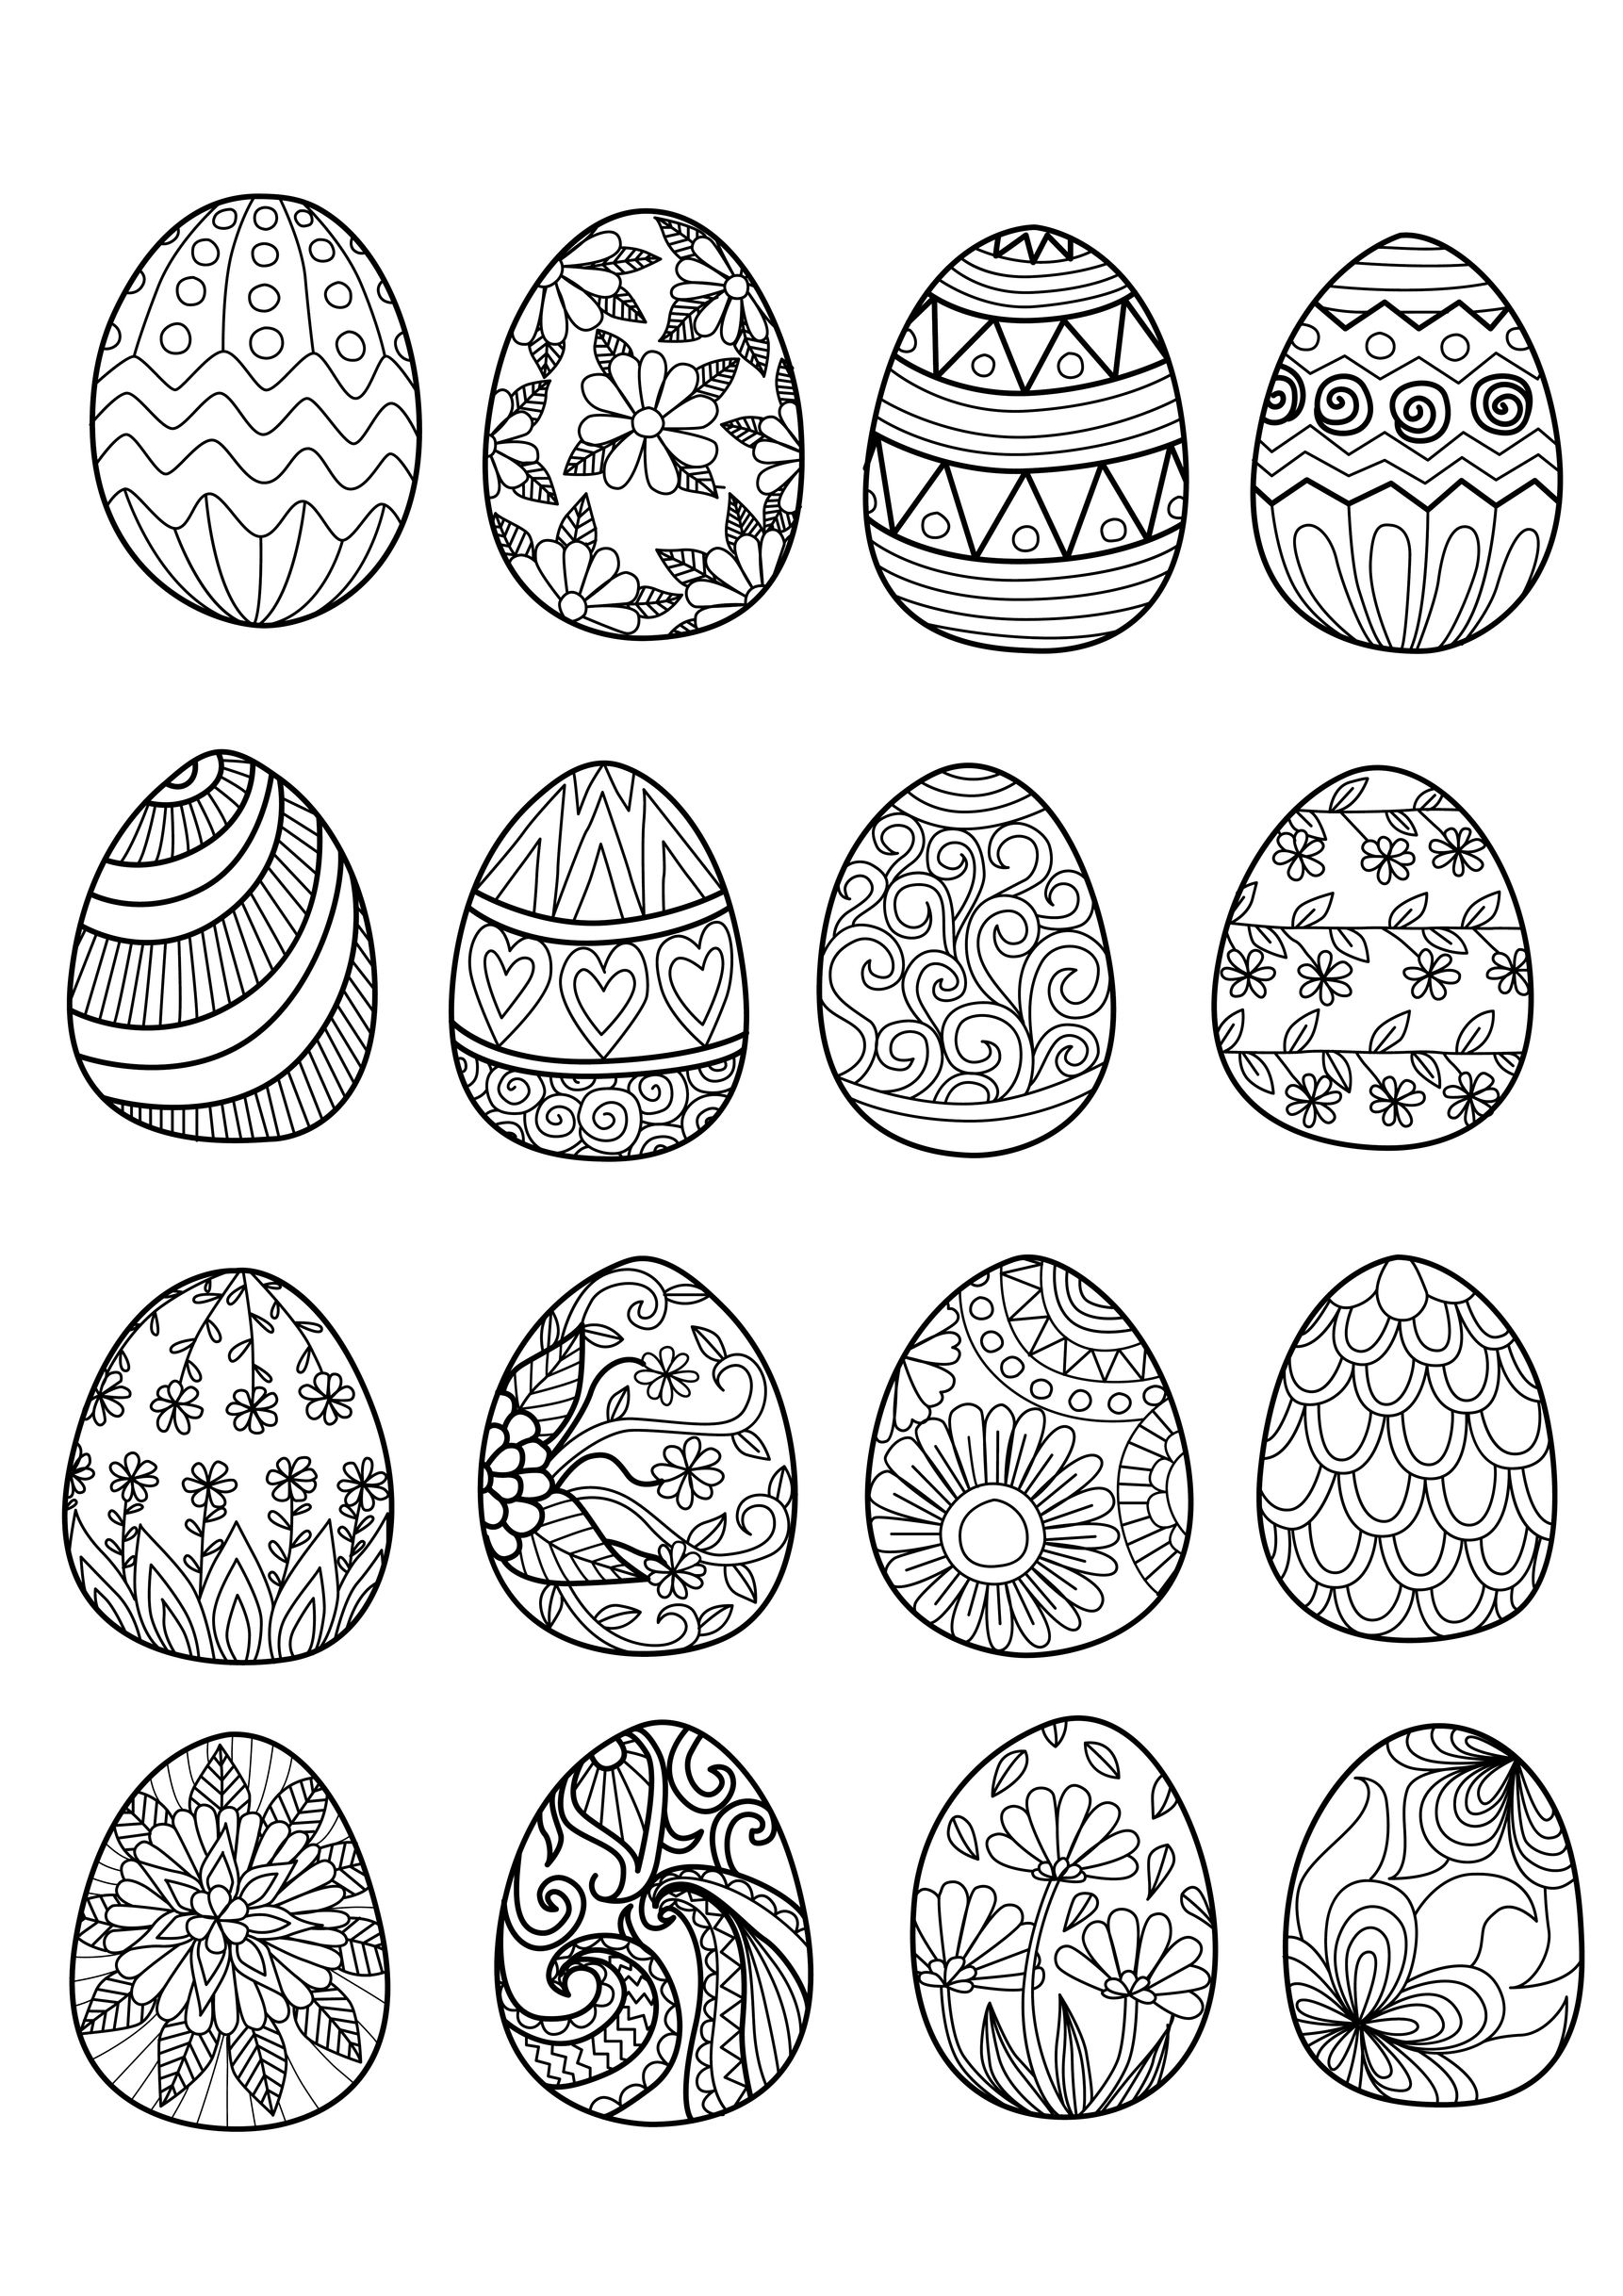 Jolis oeufs de Pâques, qu'il ne reste qu'à imprimer et colorier, Artiste : Bimdeedee   Source : 123rf